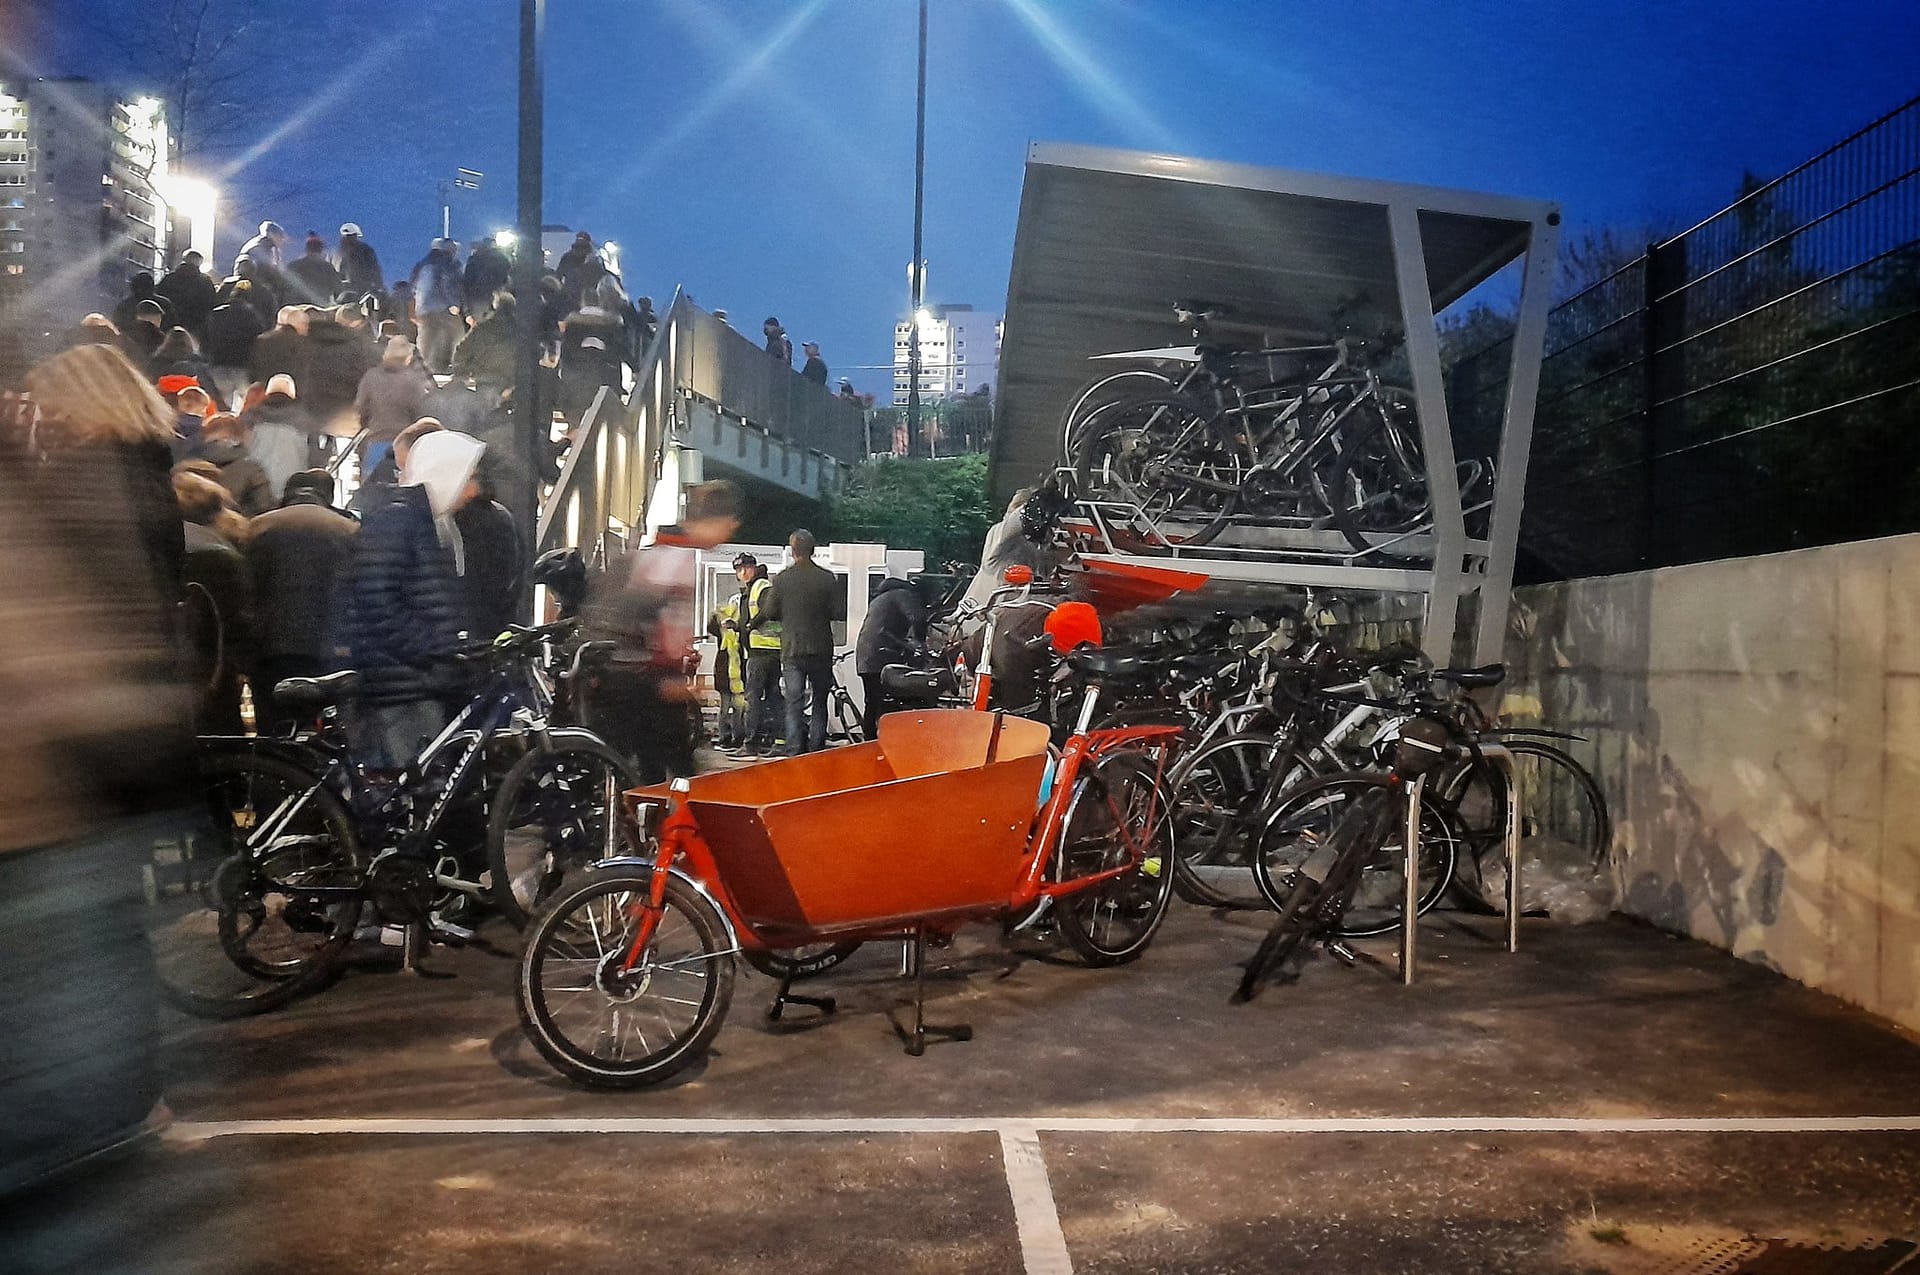 Cycle parking at football stadium